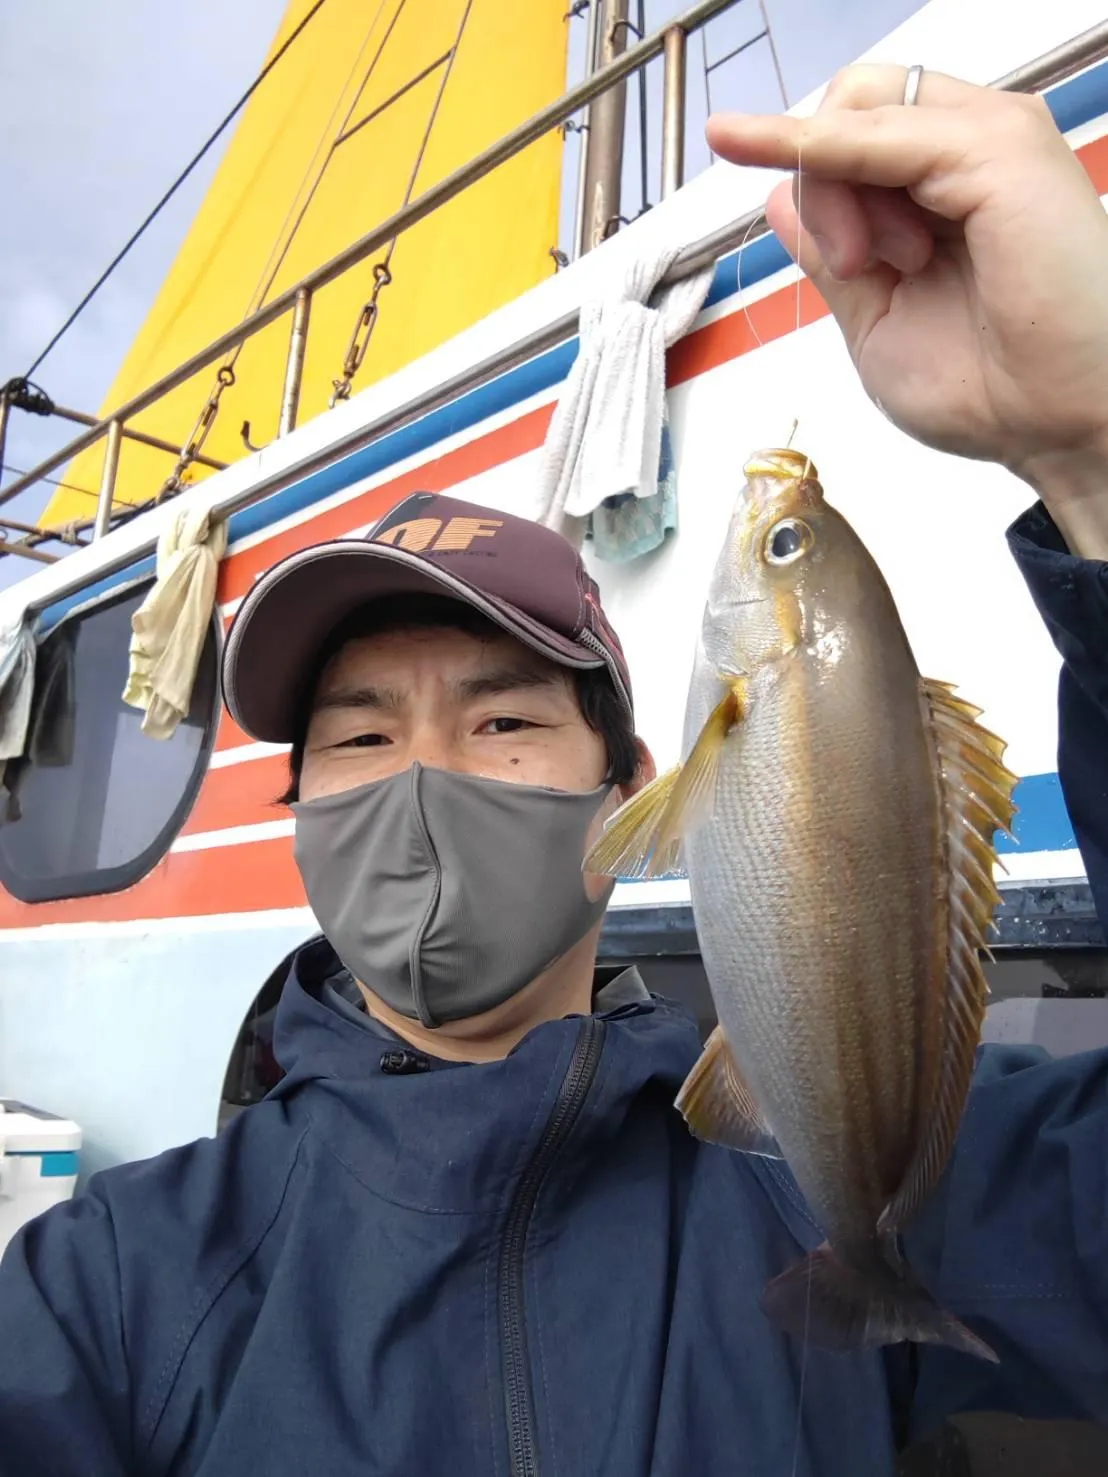 イシグロ岐阜店 脂ノリノリイサキ釣りに初挑戦 釣具のイシグロ 釣り情報サイト